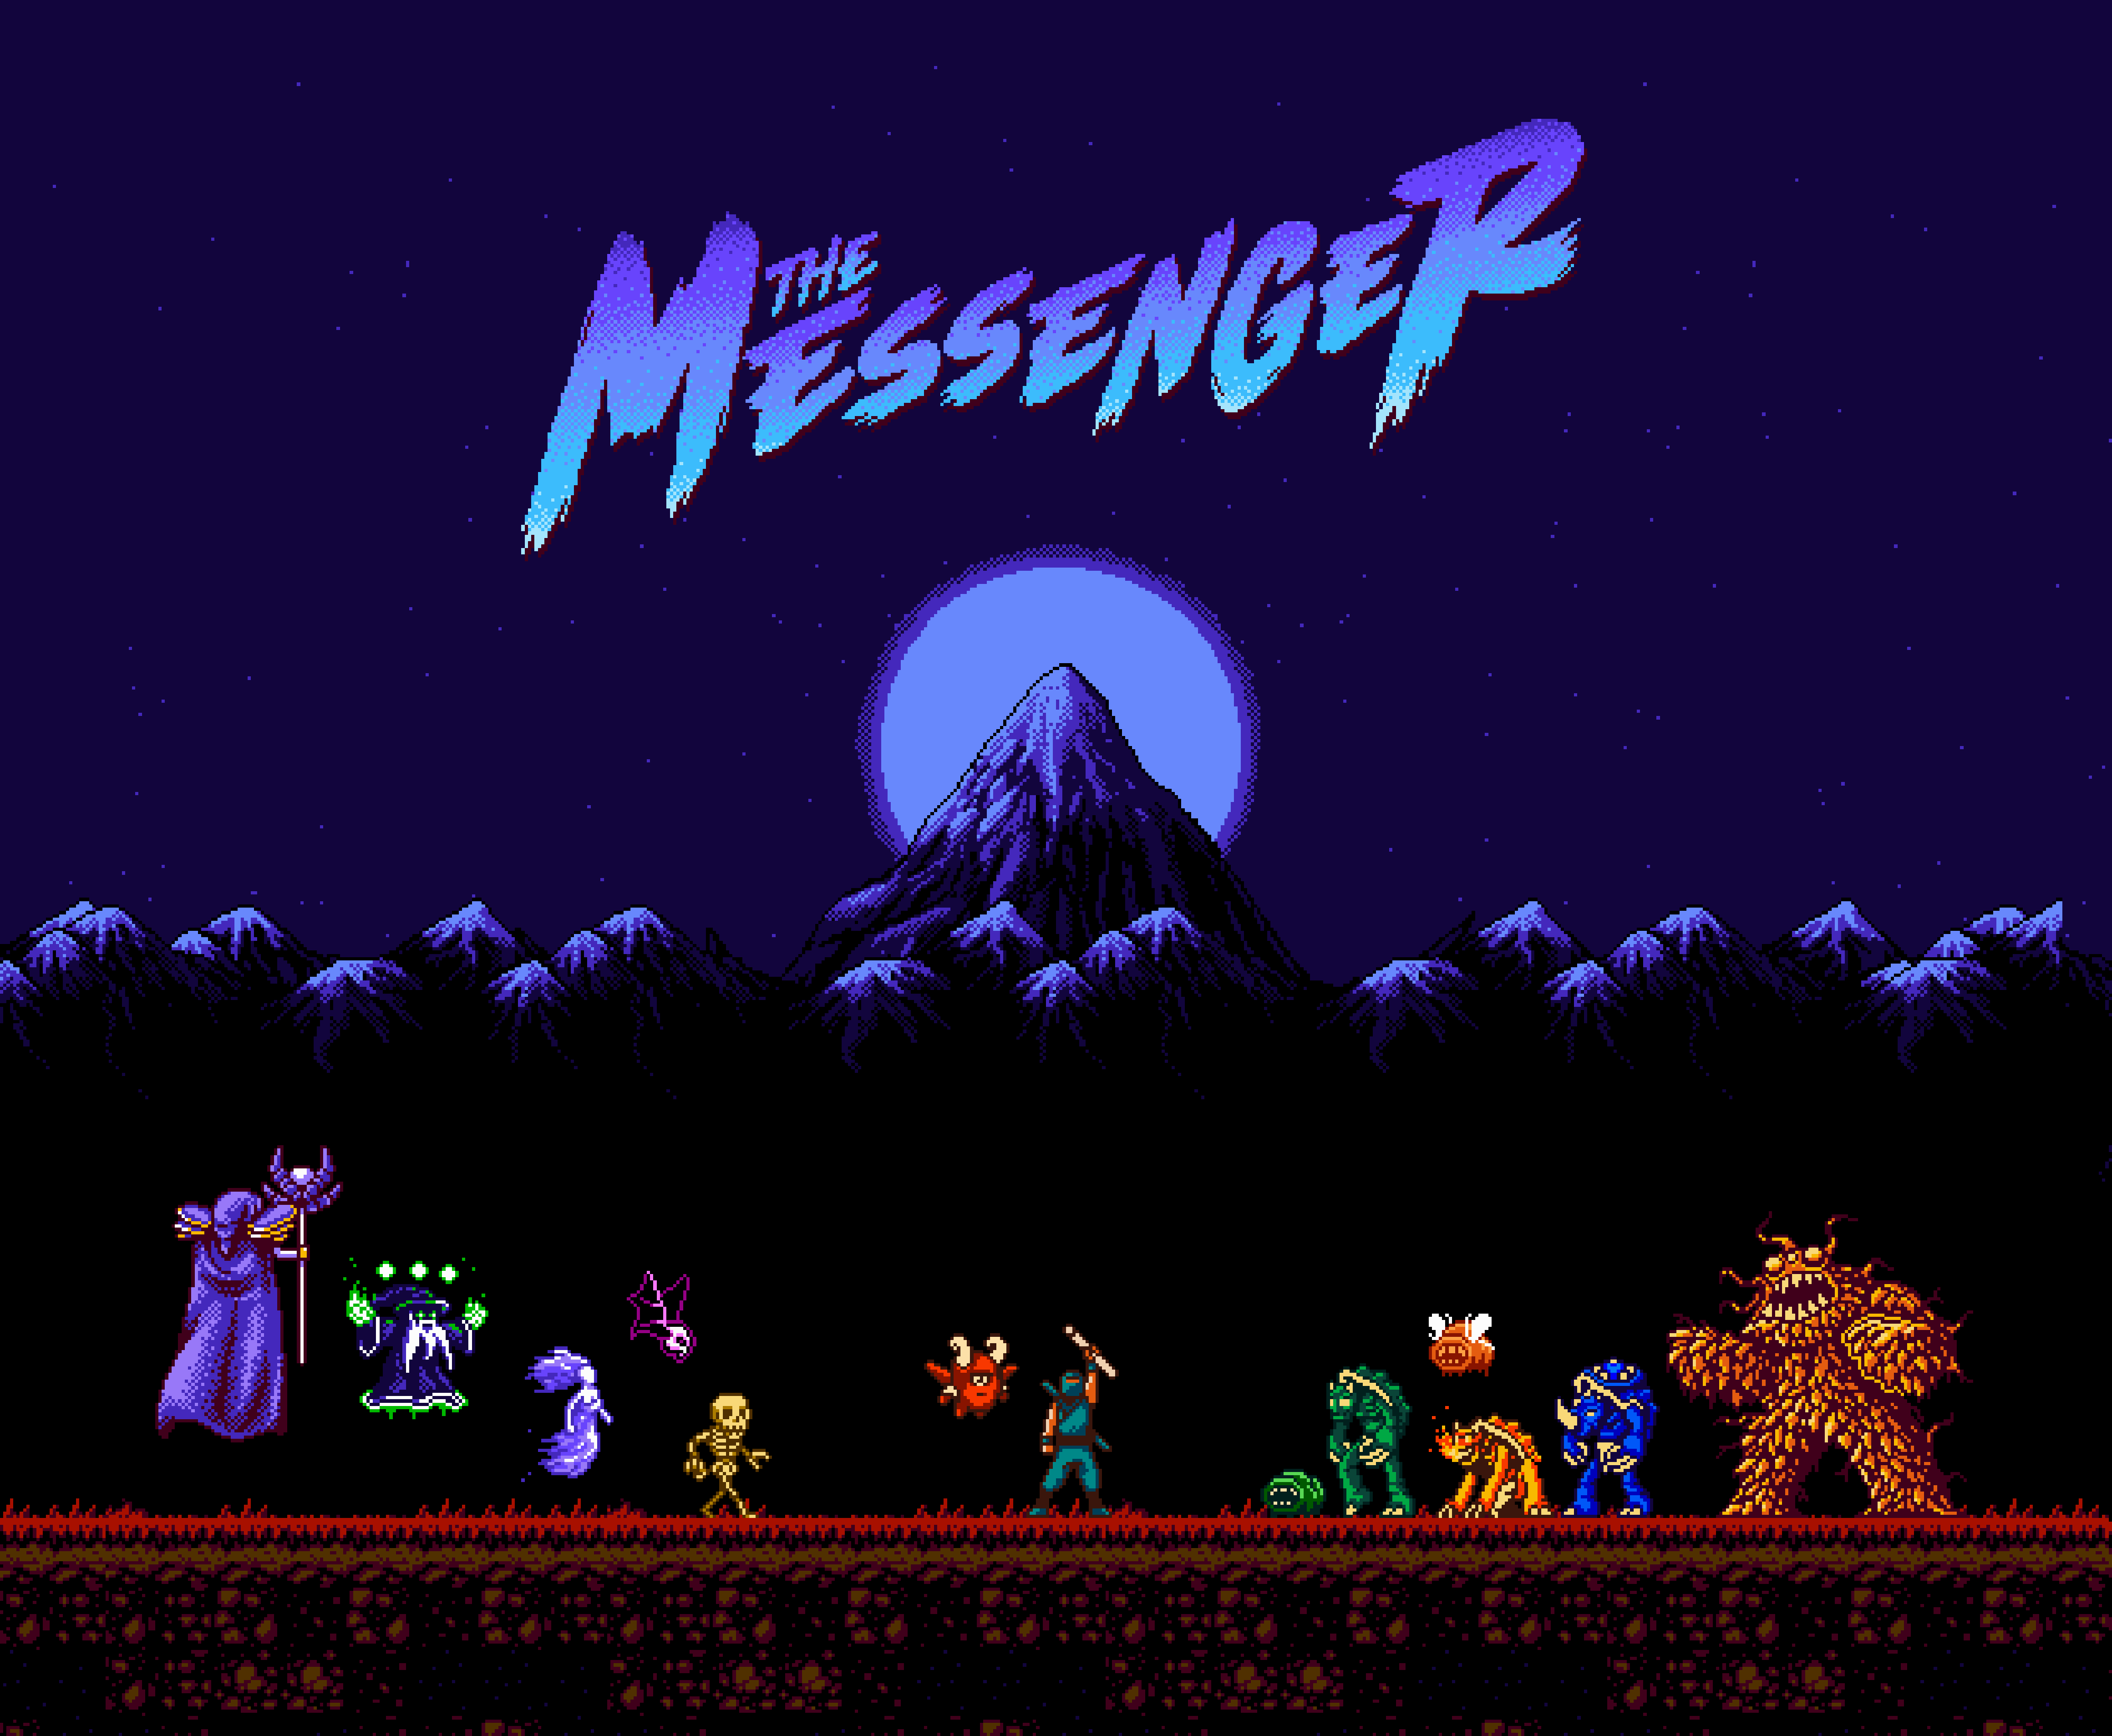 The messenger игра. The Messenger игра арты. The Messenger (2018). The Messenger Вики.